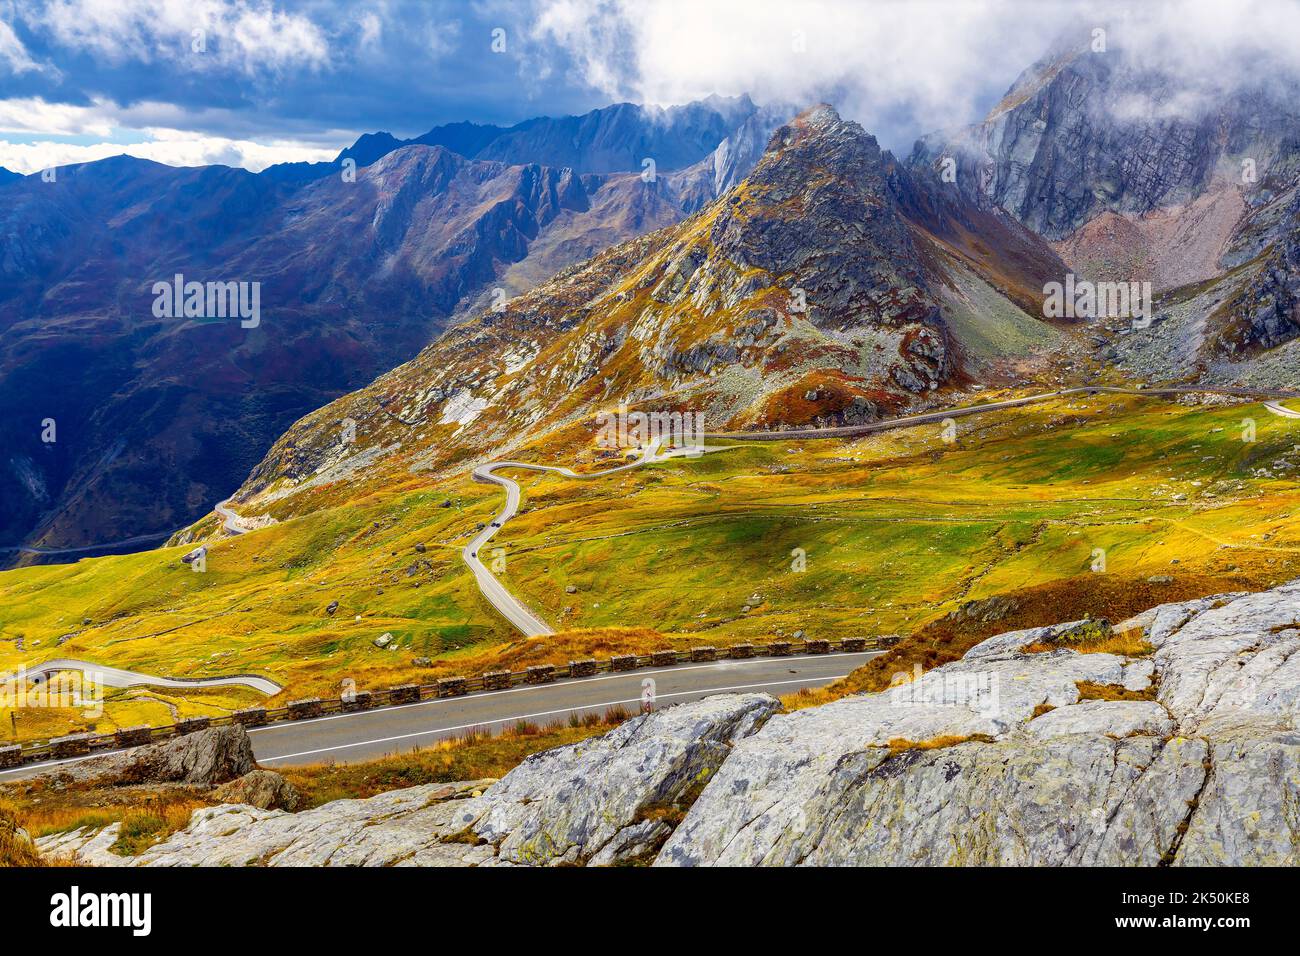 Strada tortuosa che conduce al Passo col du Grand St-Bernard (alt. 2473 m) dalla valle d'Aosta. Frontiera italiana e svizzera. Foto Stock